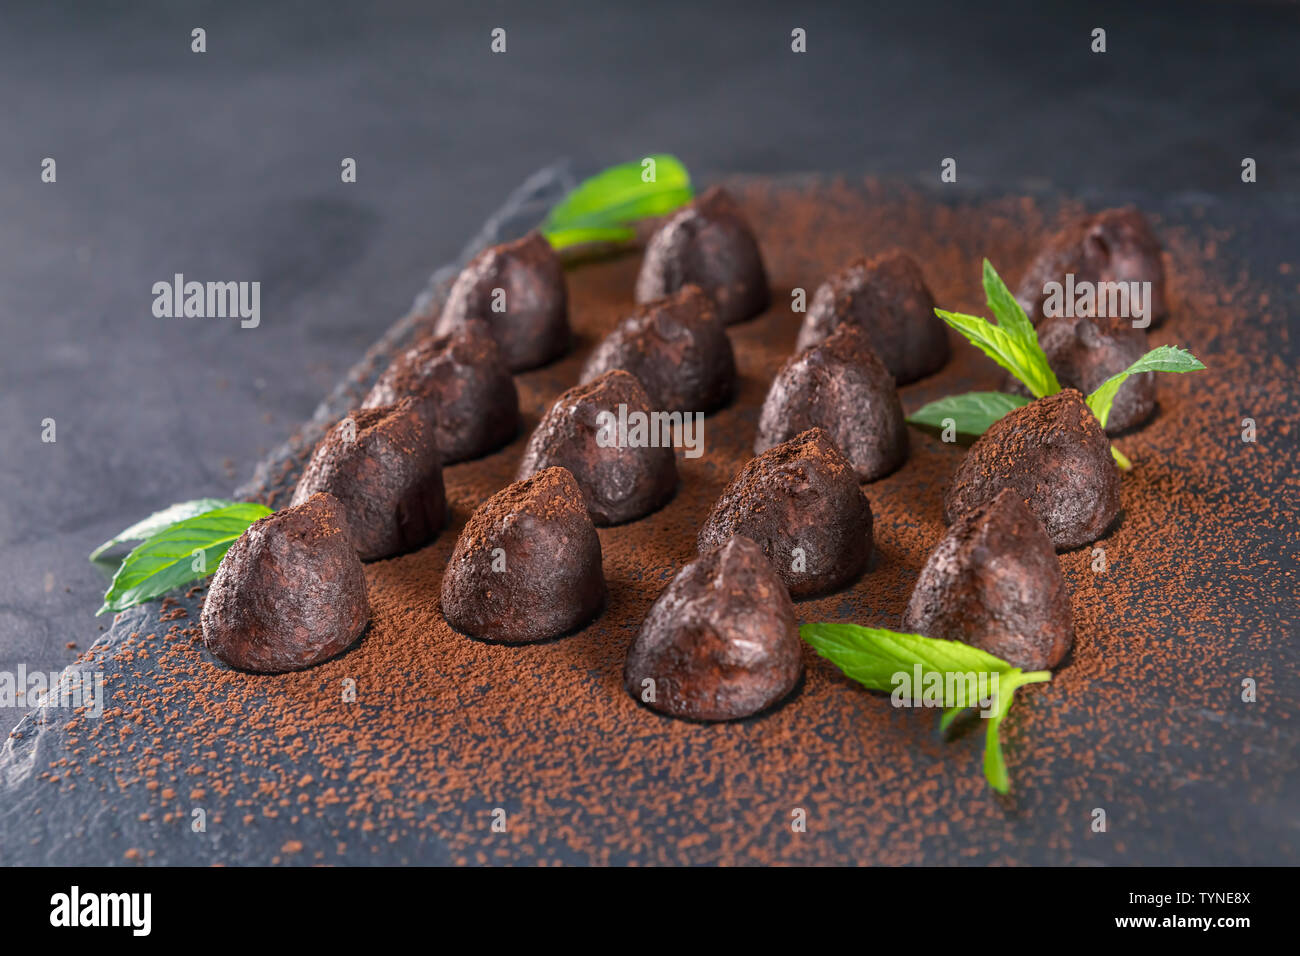 Truffes au chocolat maison à la menthe saupoudré de poudre de cacao sur ardoise. L'accent sur deuxième truffe en route. Banque D'Images